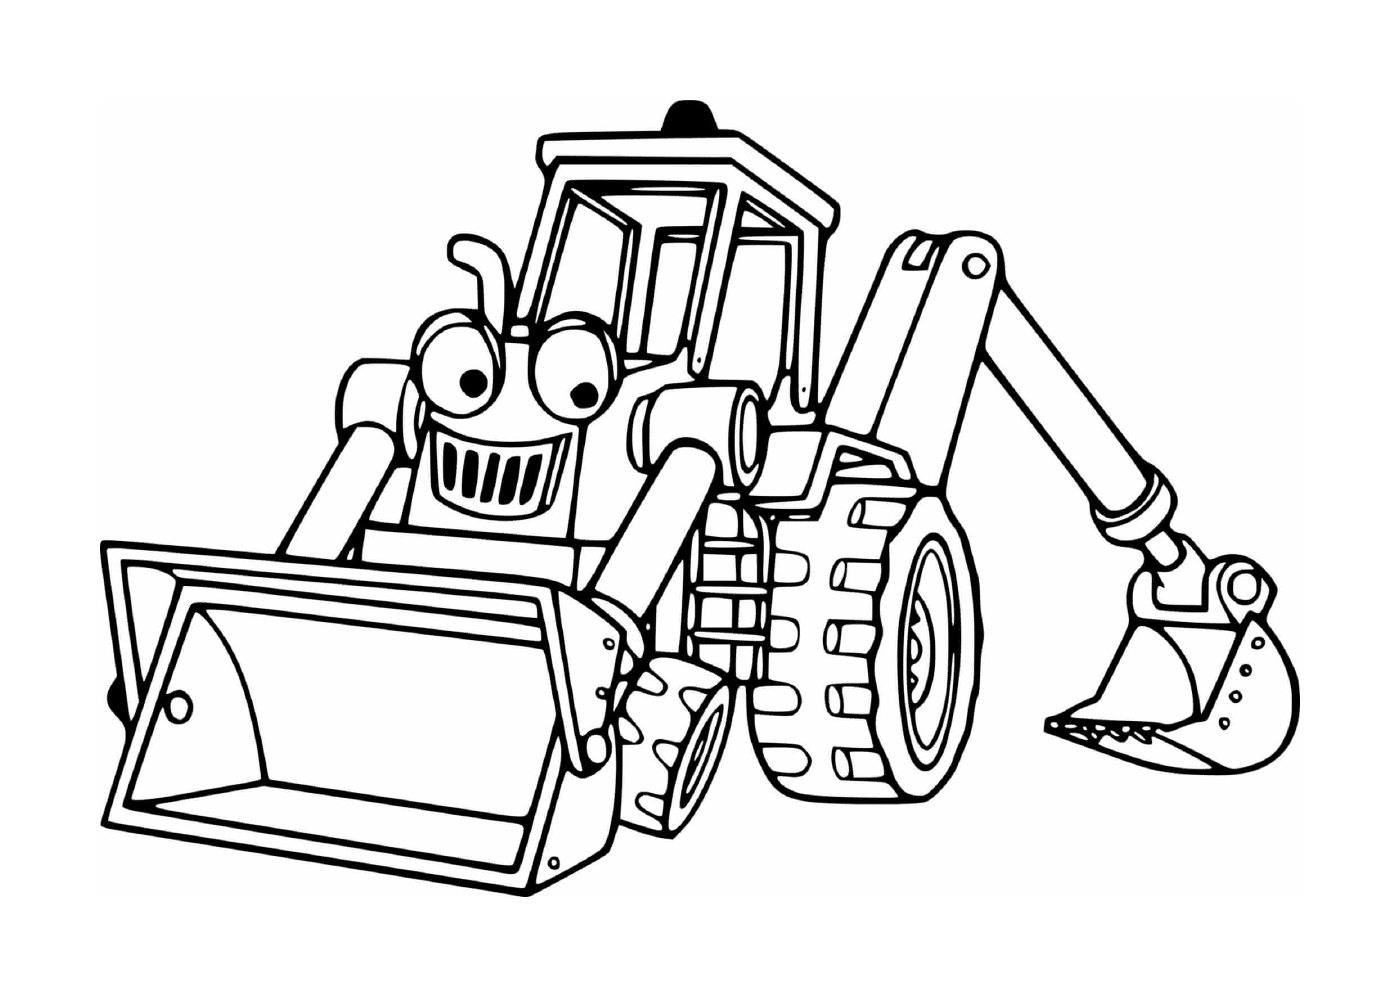  Calzado tractor utilizado en una obra de construcción 